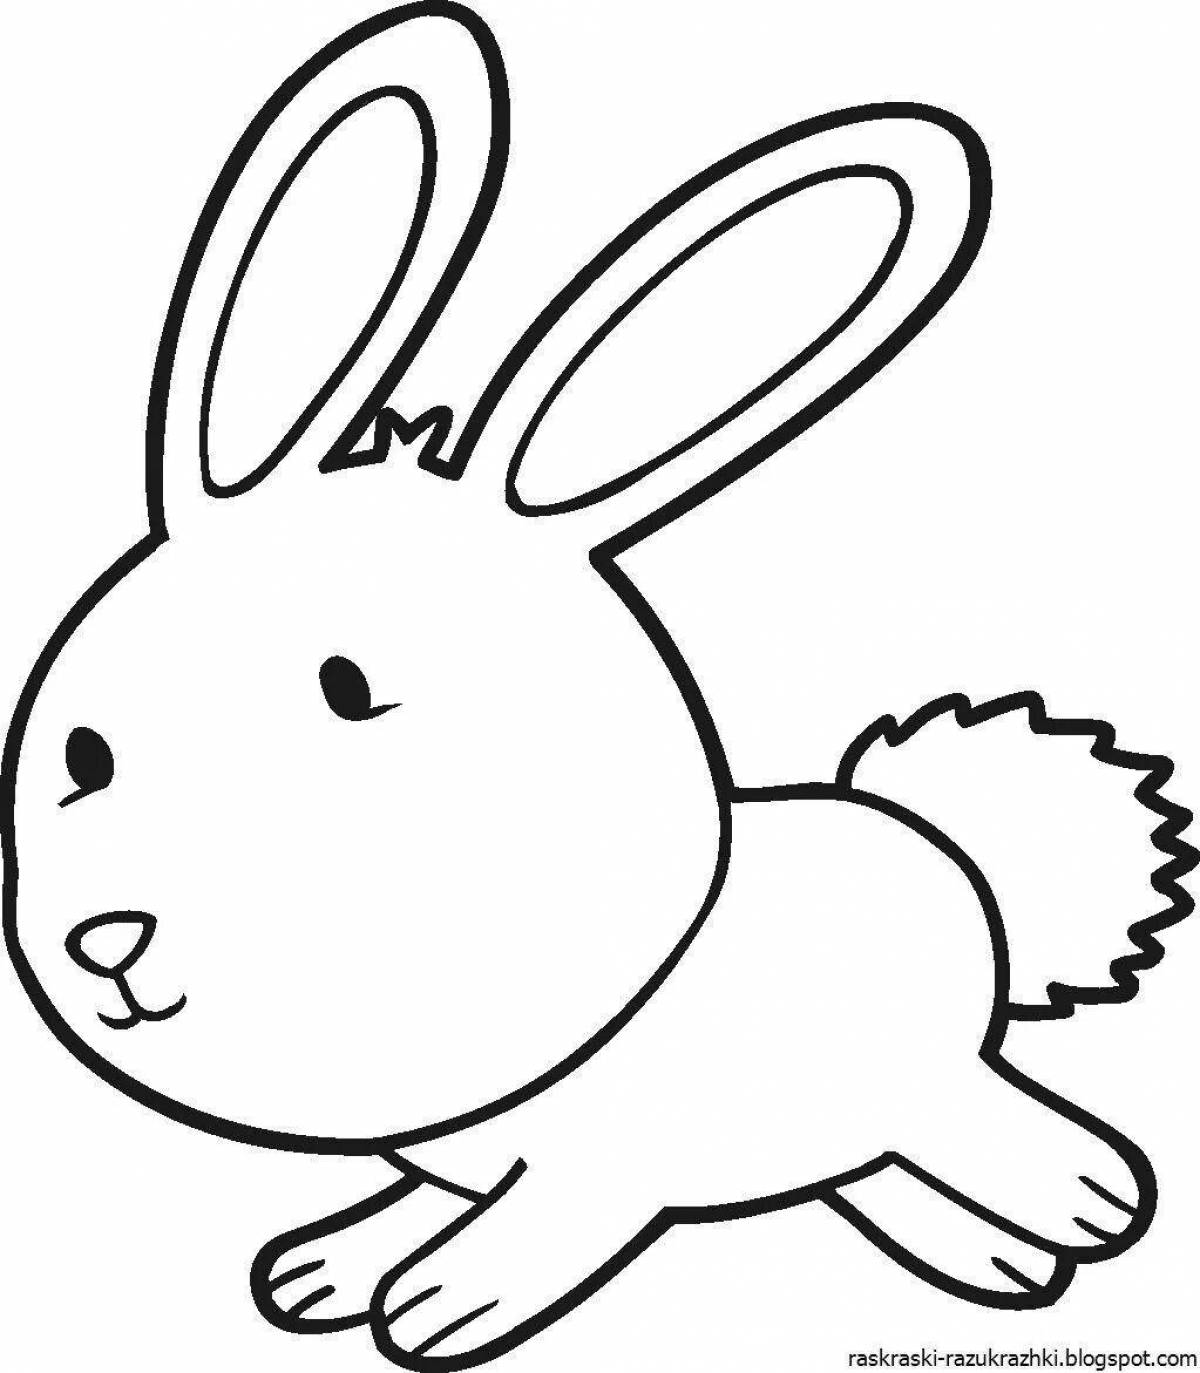 Сказочная картинка кролика-раскраски для детей